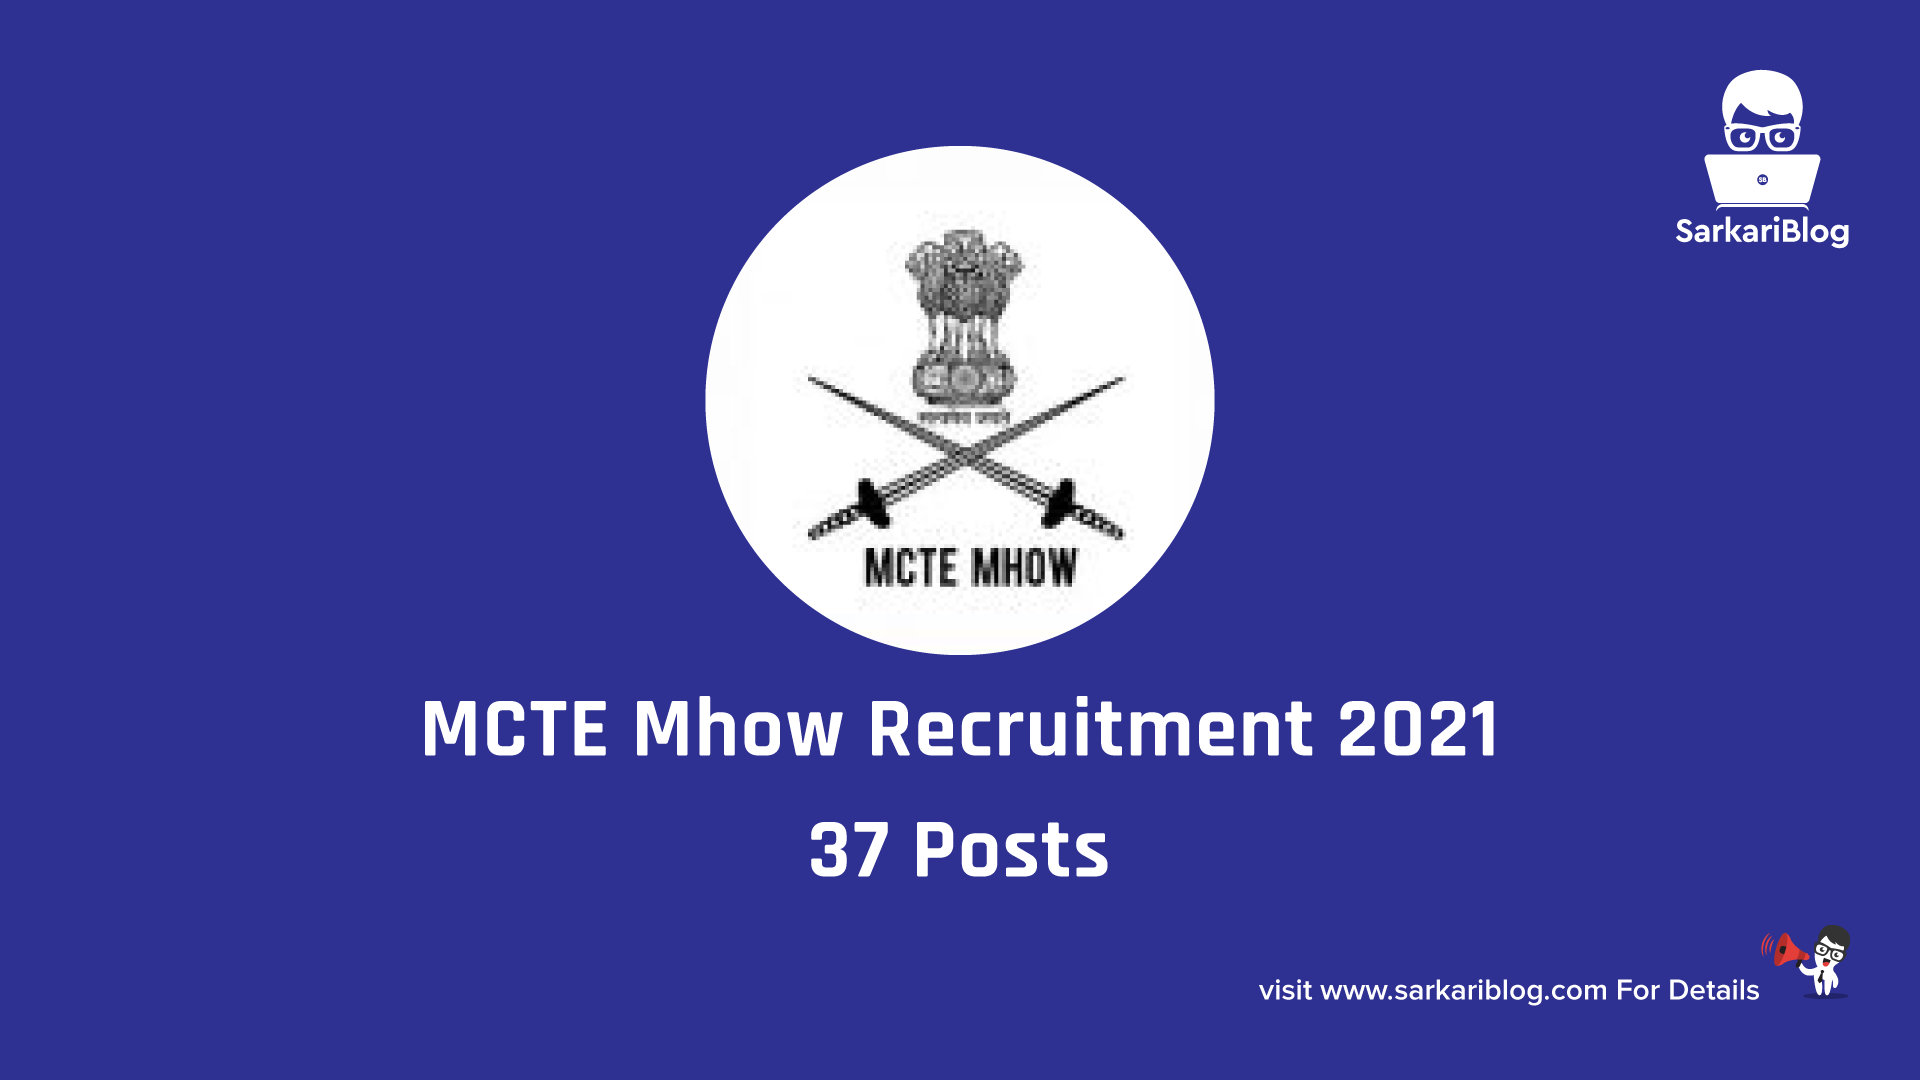 MCTE Mhow Recruitment 2021 – 37 Posts